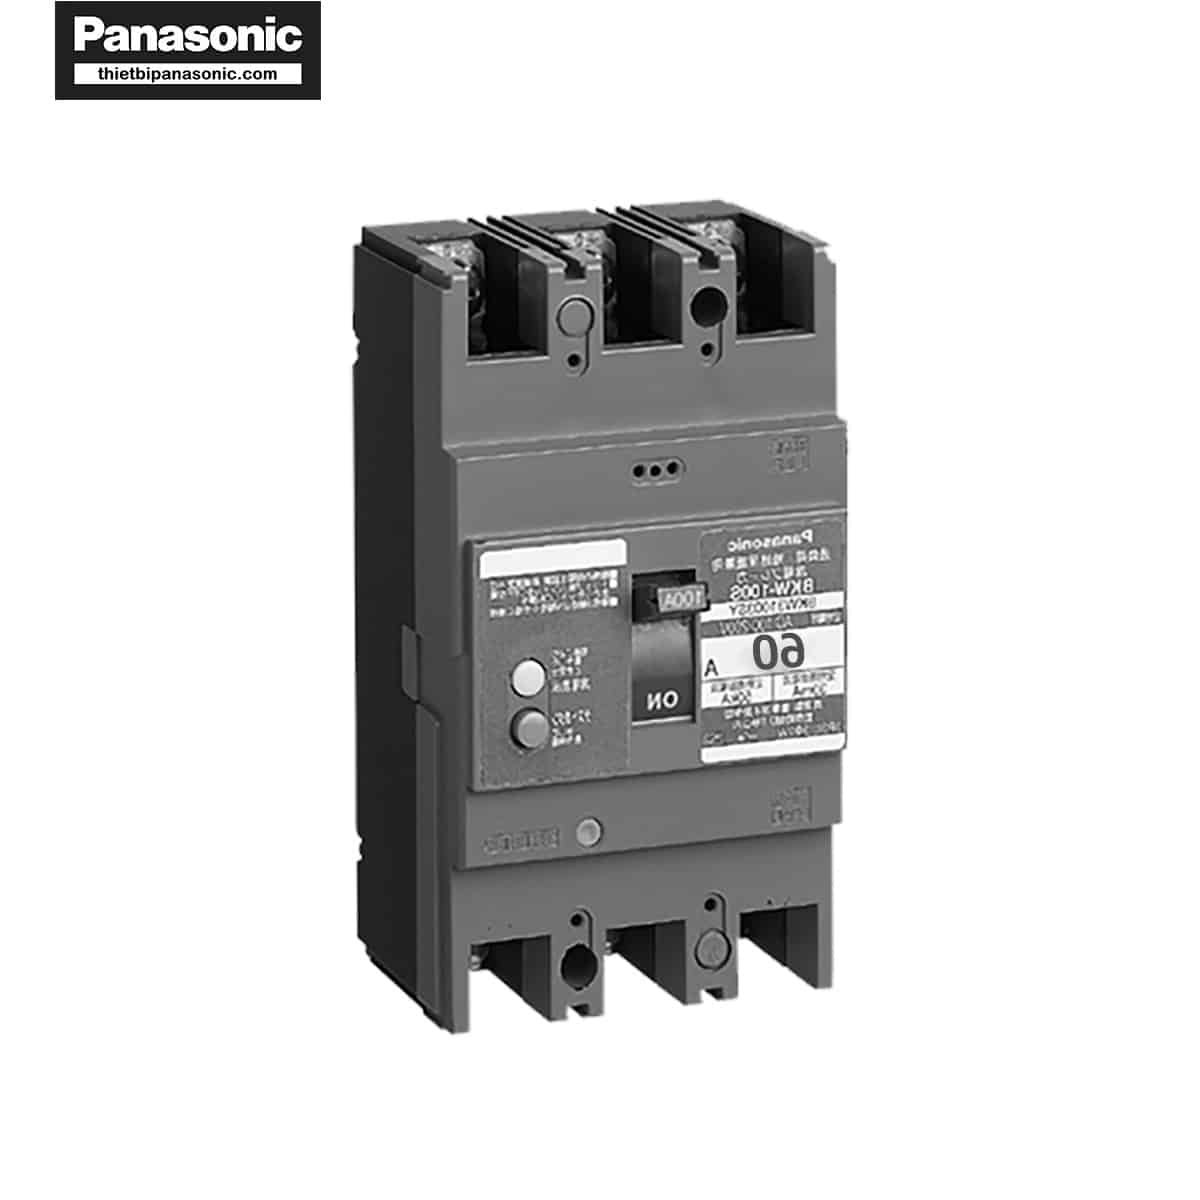 ELCB Panasonic 60A 30mA BKW2603SKY 10kA được làm từ chất liệu cao cấp, bền bỉ mang lại hiệu năng cao khi sử dụng thực tế